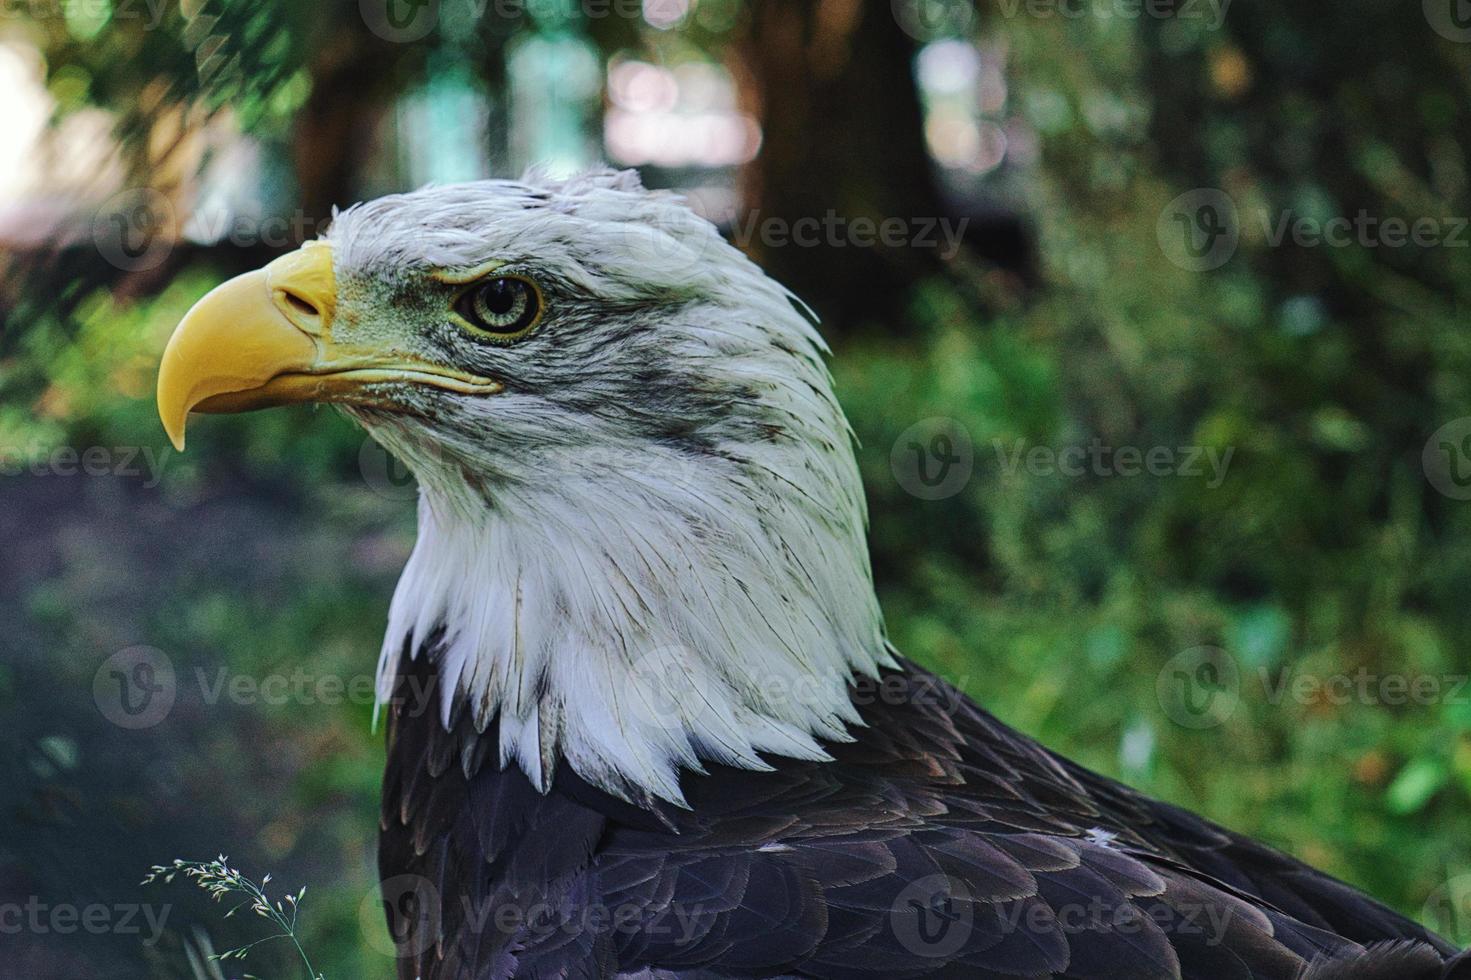 águia careca no retrato. o animal heráldico dos EUA. majestosa ave de rapina. foto